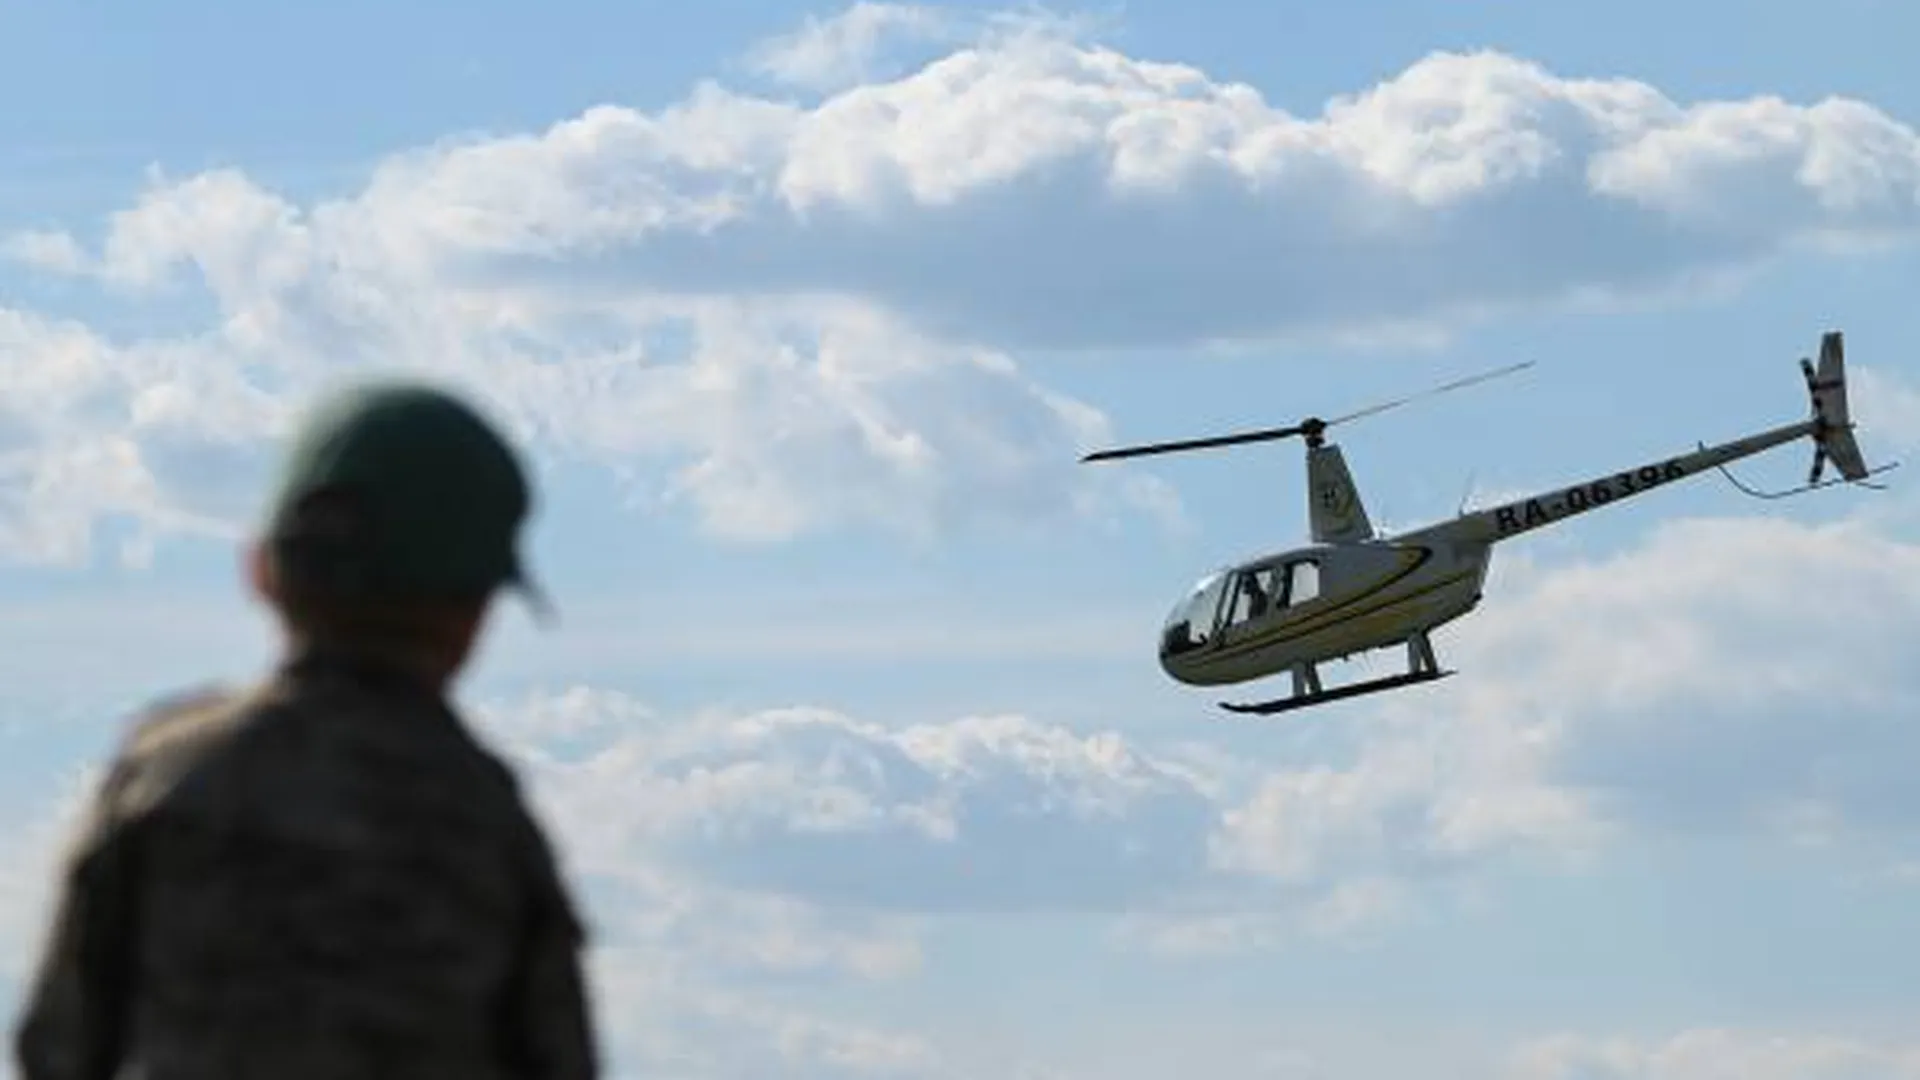 Пропавший вертолет Robinson нашли обгоревшим на Камчатке